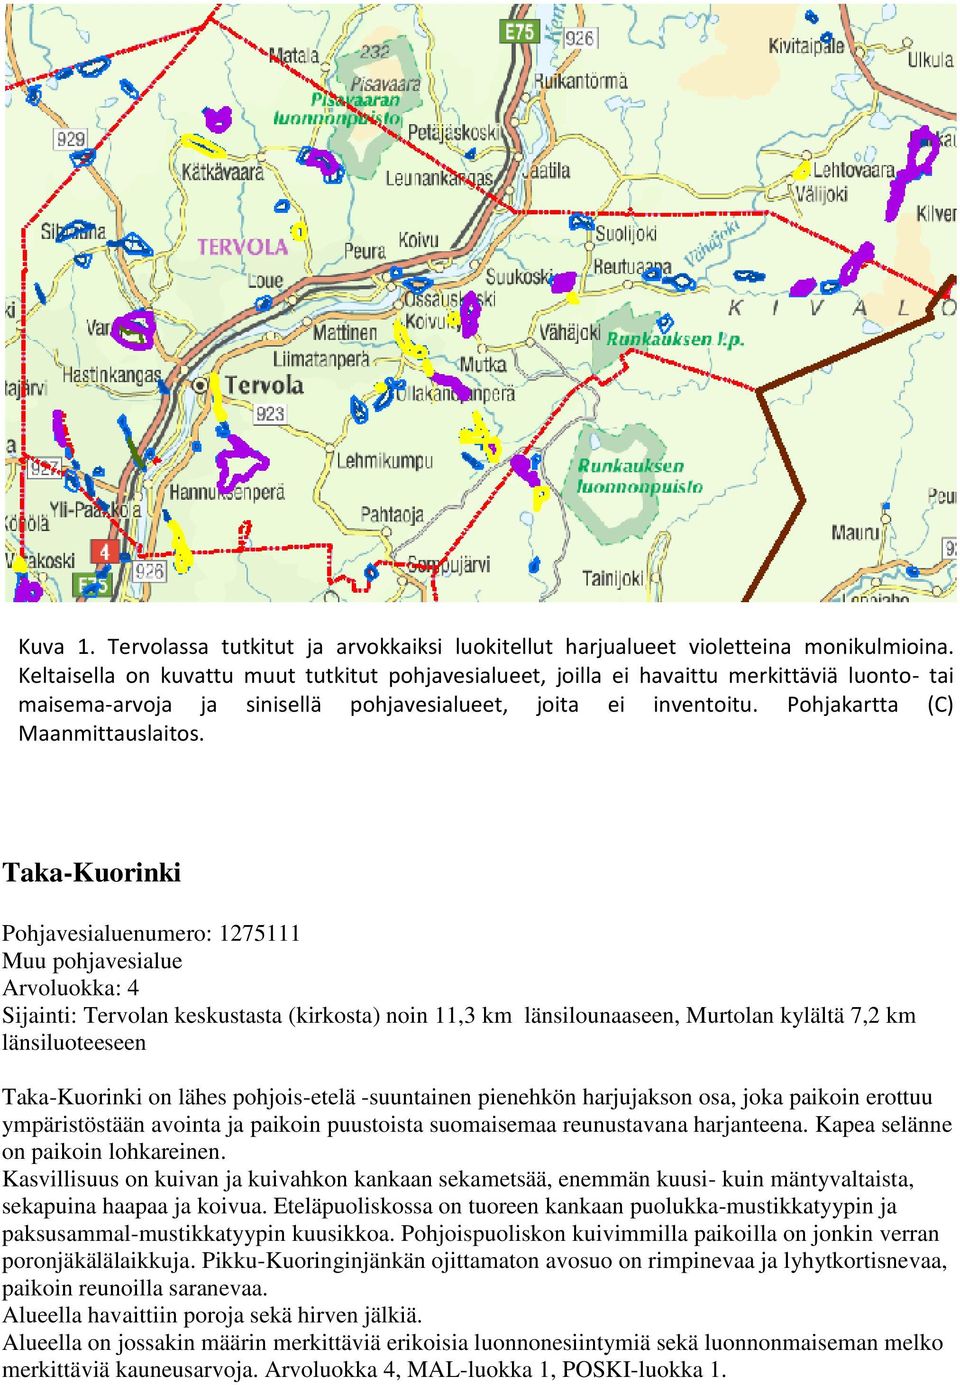 Taka-Kuorinki Pohjavesialuenumero: 1275111 Muu pohjavesialue Arvoluokka: 4 Sijainti: Tervolan keskustasta (kirkosta) noin 11,3 km länsilounaaseen, Murtolan kylältä 7,2 km länsiluoteeseen